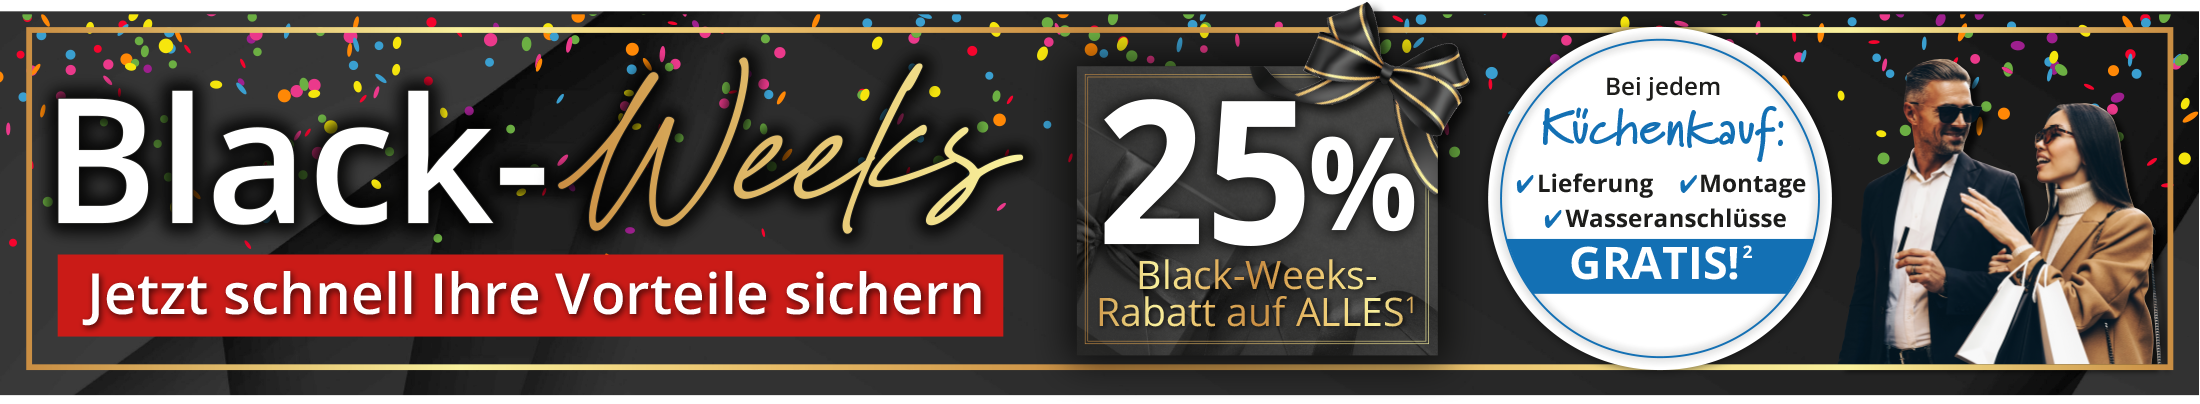 Black-Weeks 25% Black-Weeks-Rabatt auf ALLES